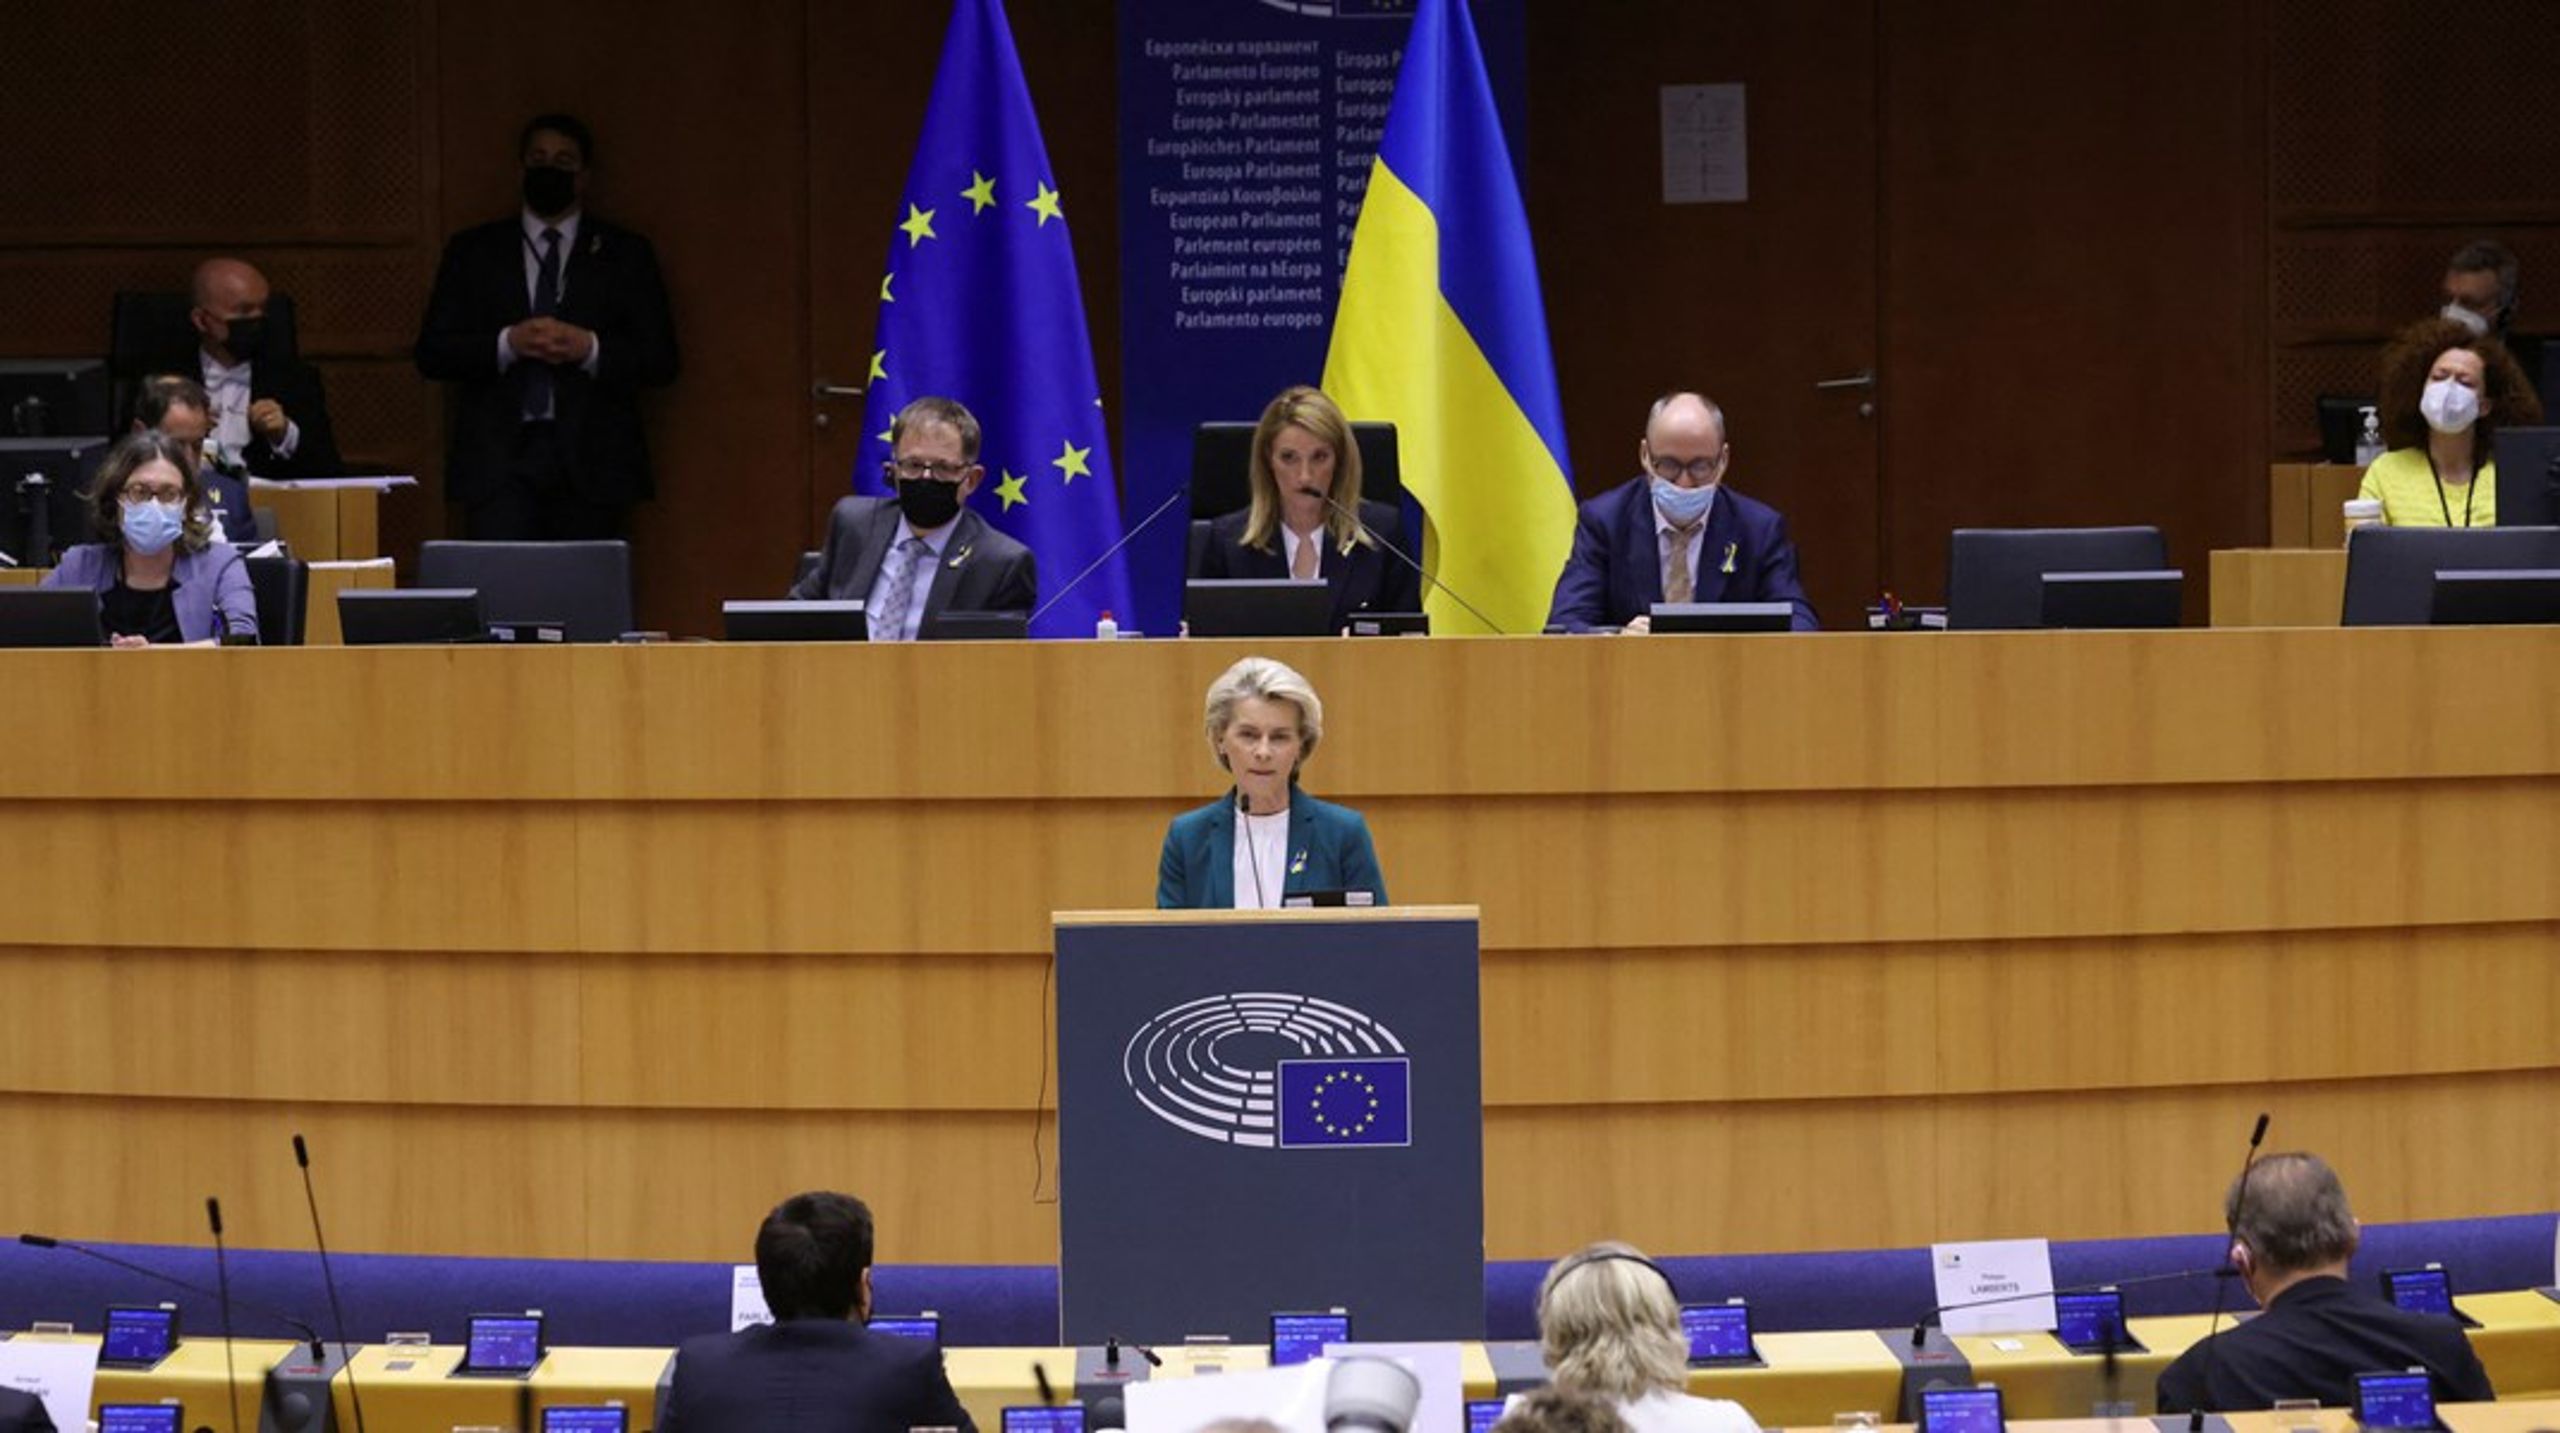 Søndag meldte kommissionsformand Ursula von
der Leyen første gang, at de to russiske statsmedier vil blive censureret i EU. Tirsdag i Parlamentet gentog hun, at de to medier "ikke længere skal være i stand til at sprede deres løgne".